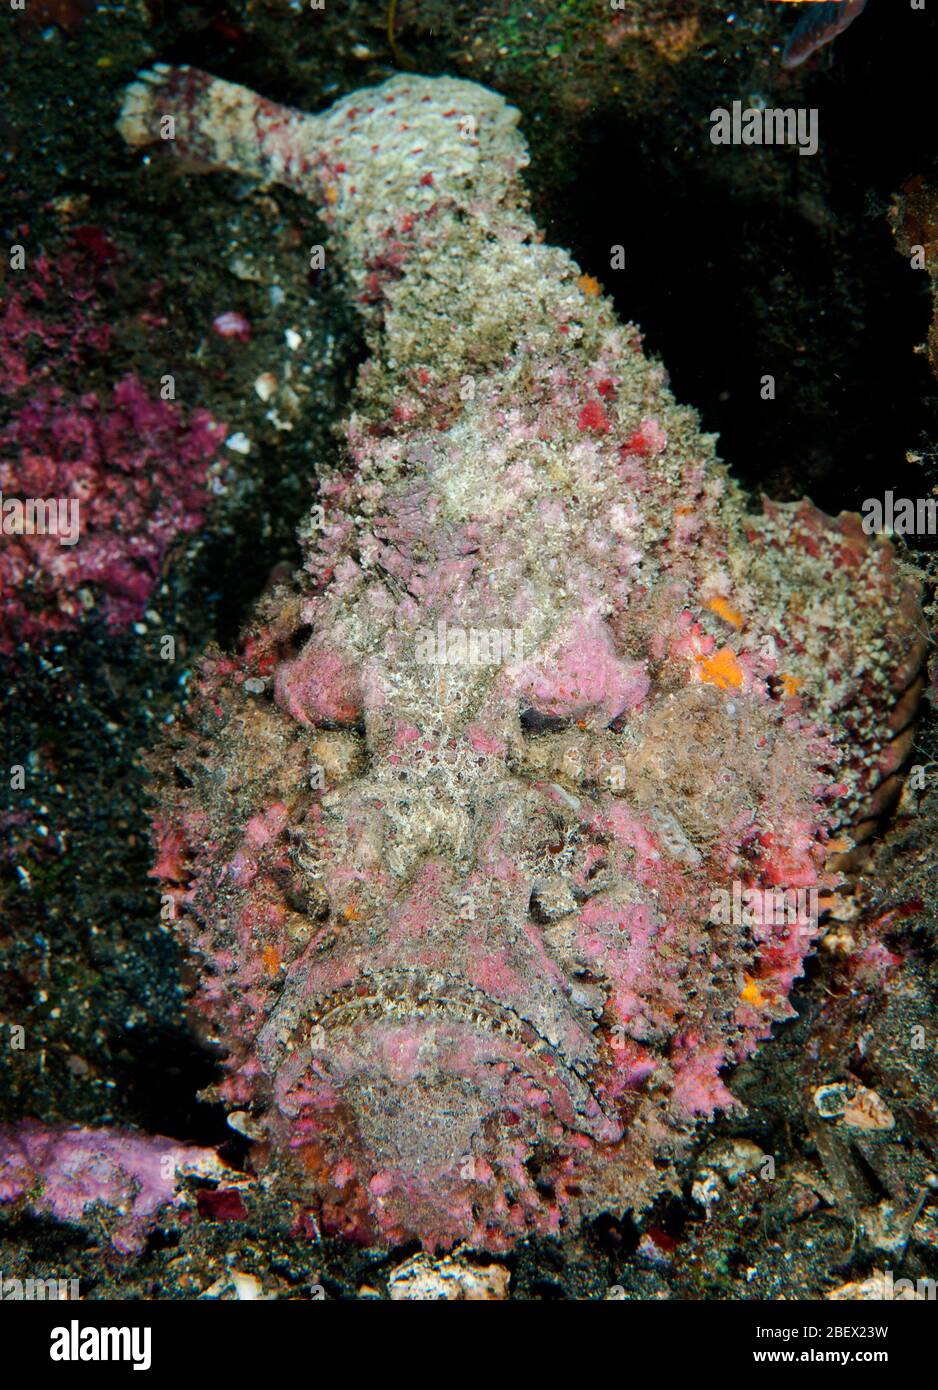 Stonefish, Synanceia verrucosa, Sulawesi Indonesia. Stock Photo